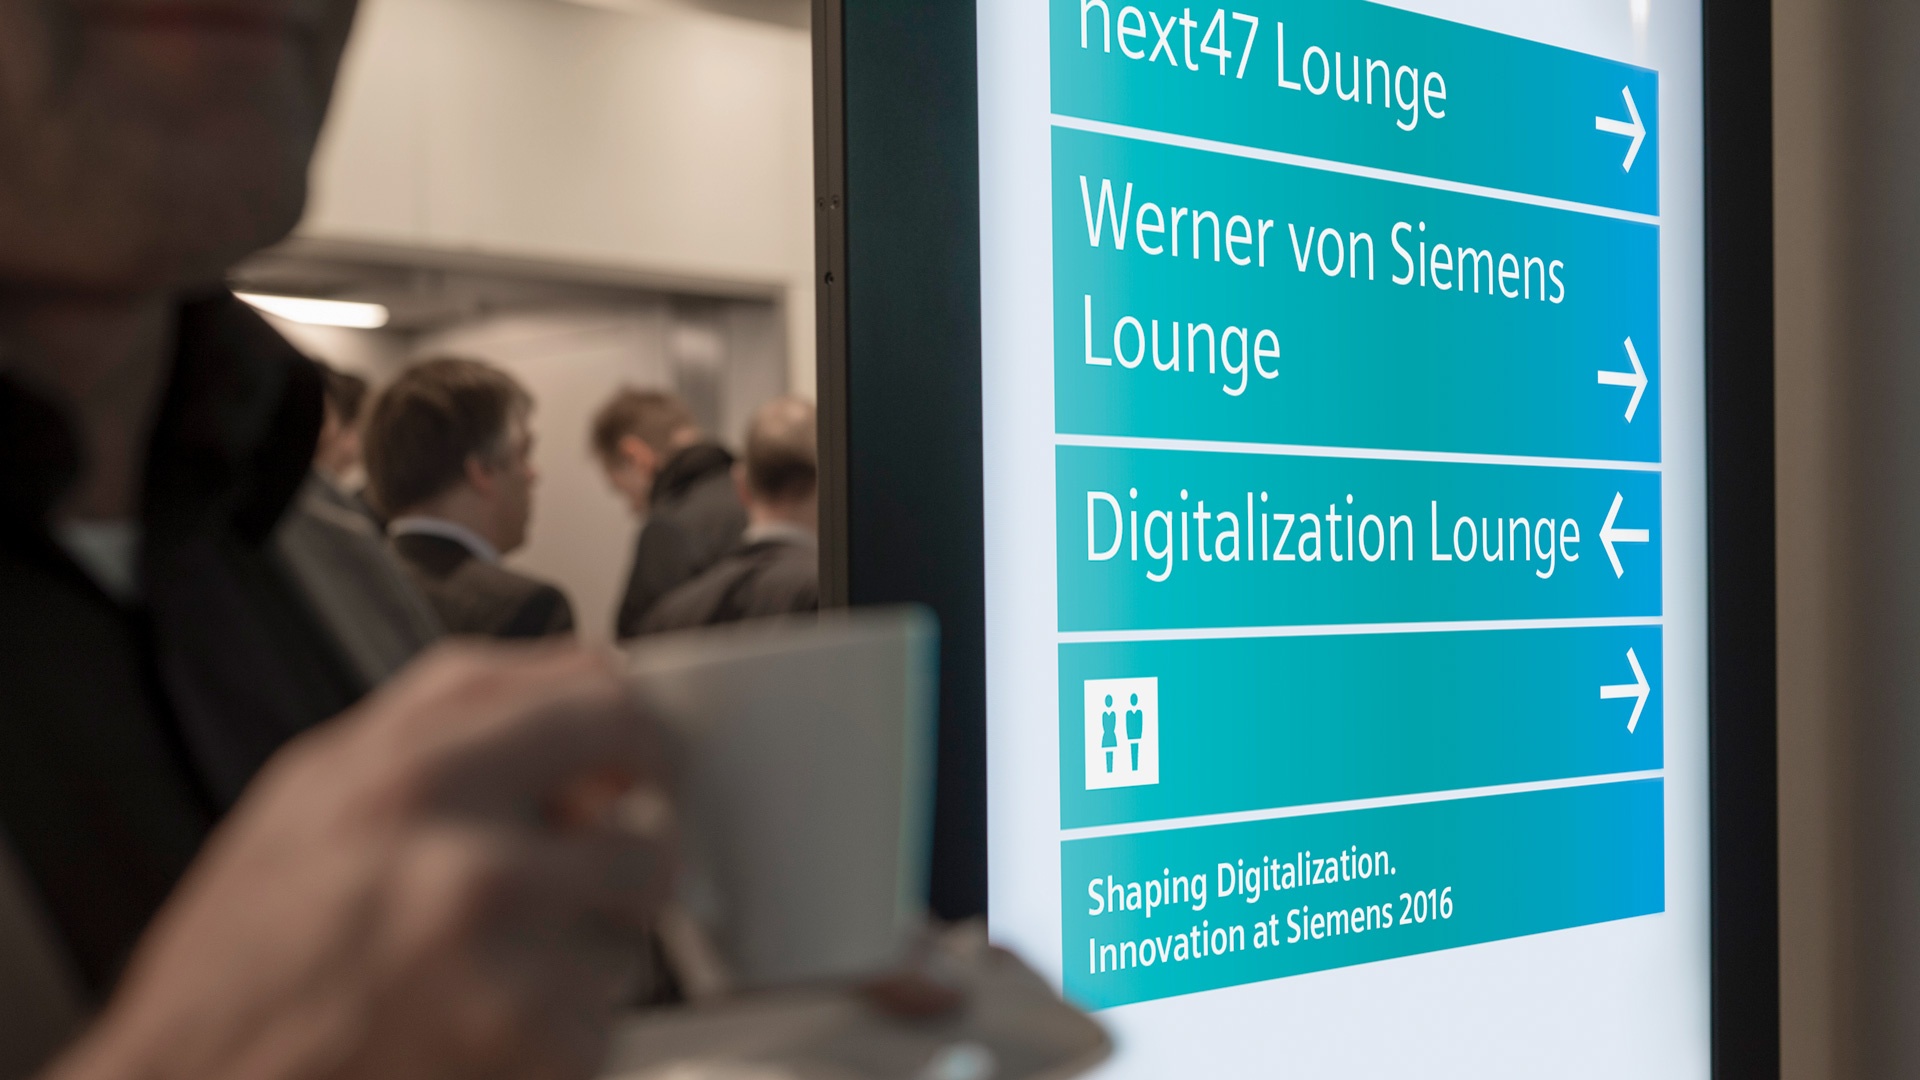 Innovation at Siemens 2016